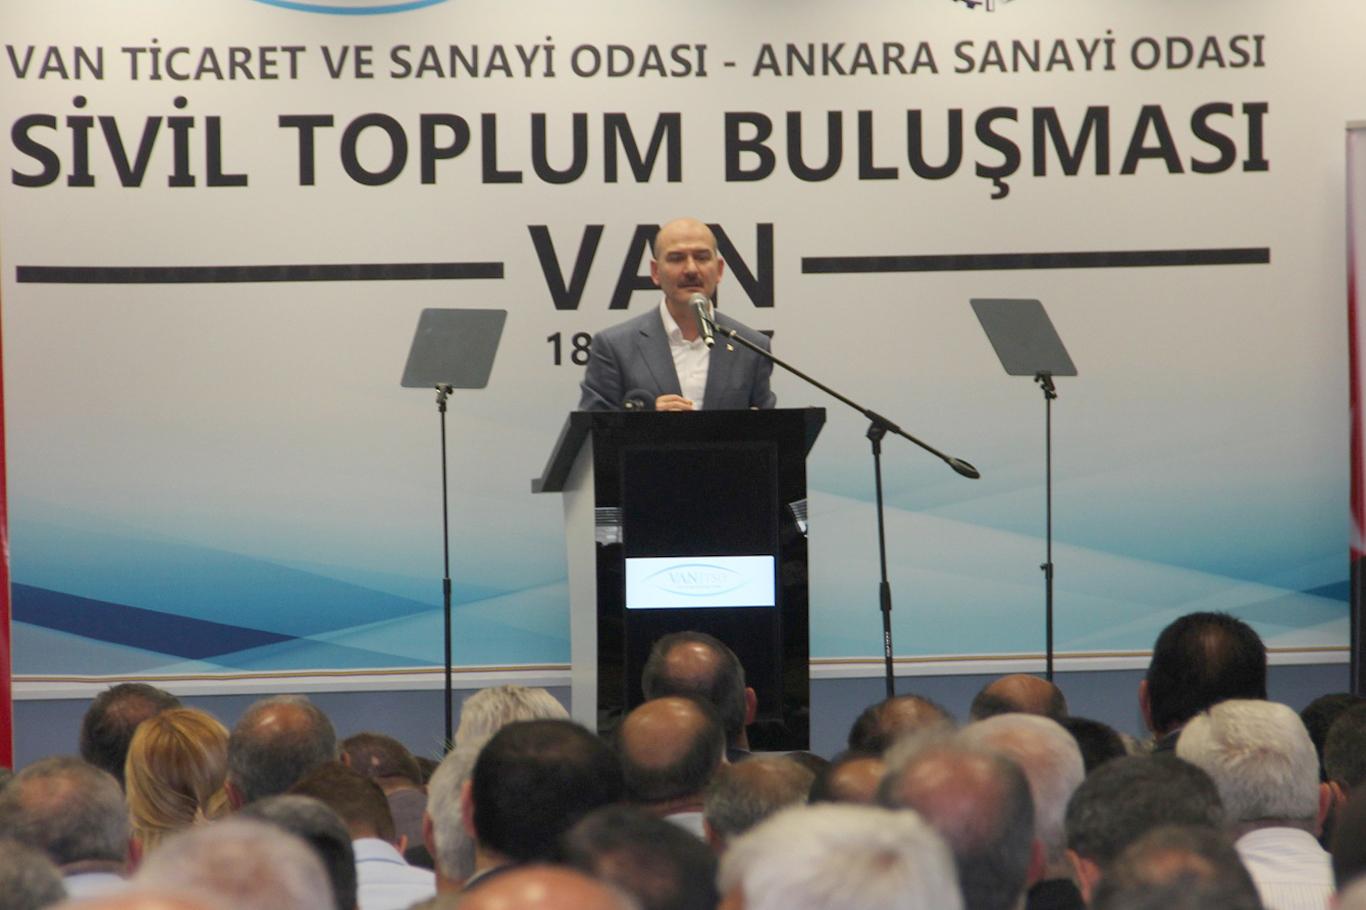 "Doğu ve Güneydoğu Türkiye’nin yeni sıçrama merkezleridir"